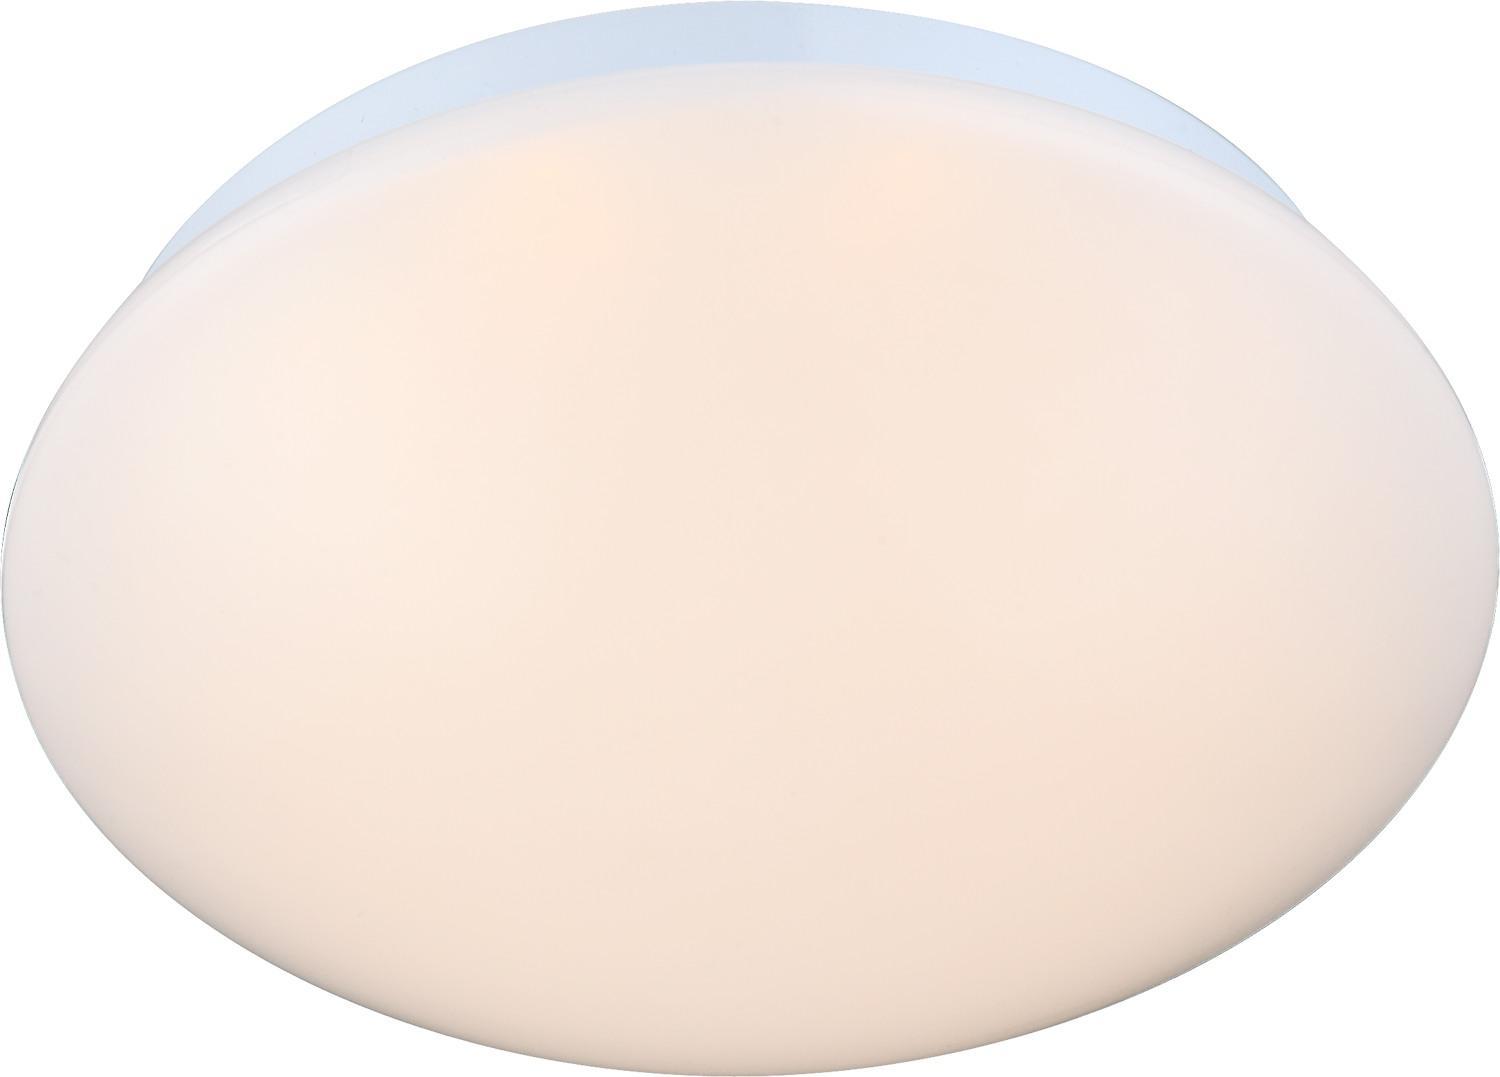 Plafoniera tonda con lampada LED inclusa GLOBO MARLON, colore bianco, acrilico opale, 8W, 500 lumen, 3000K